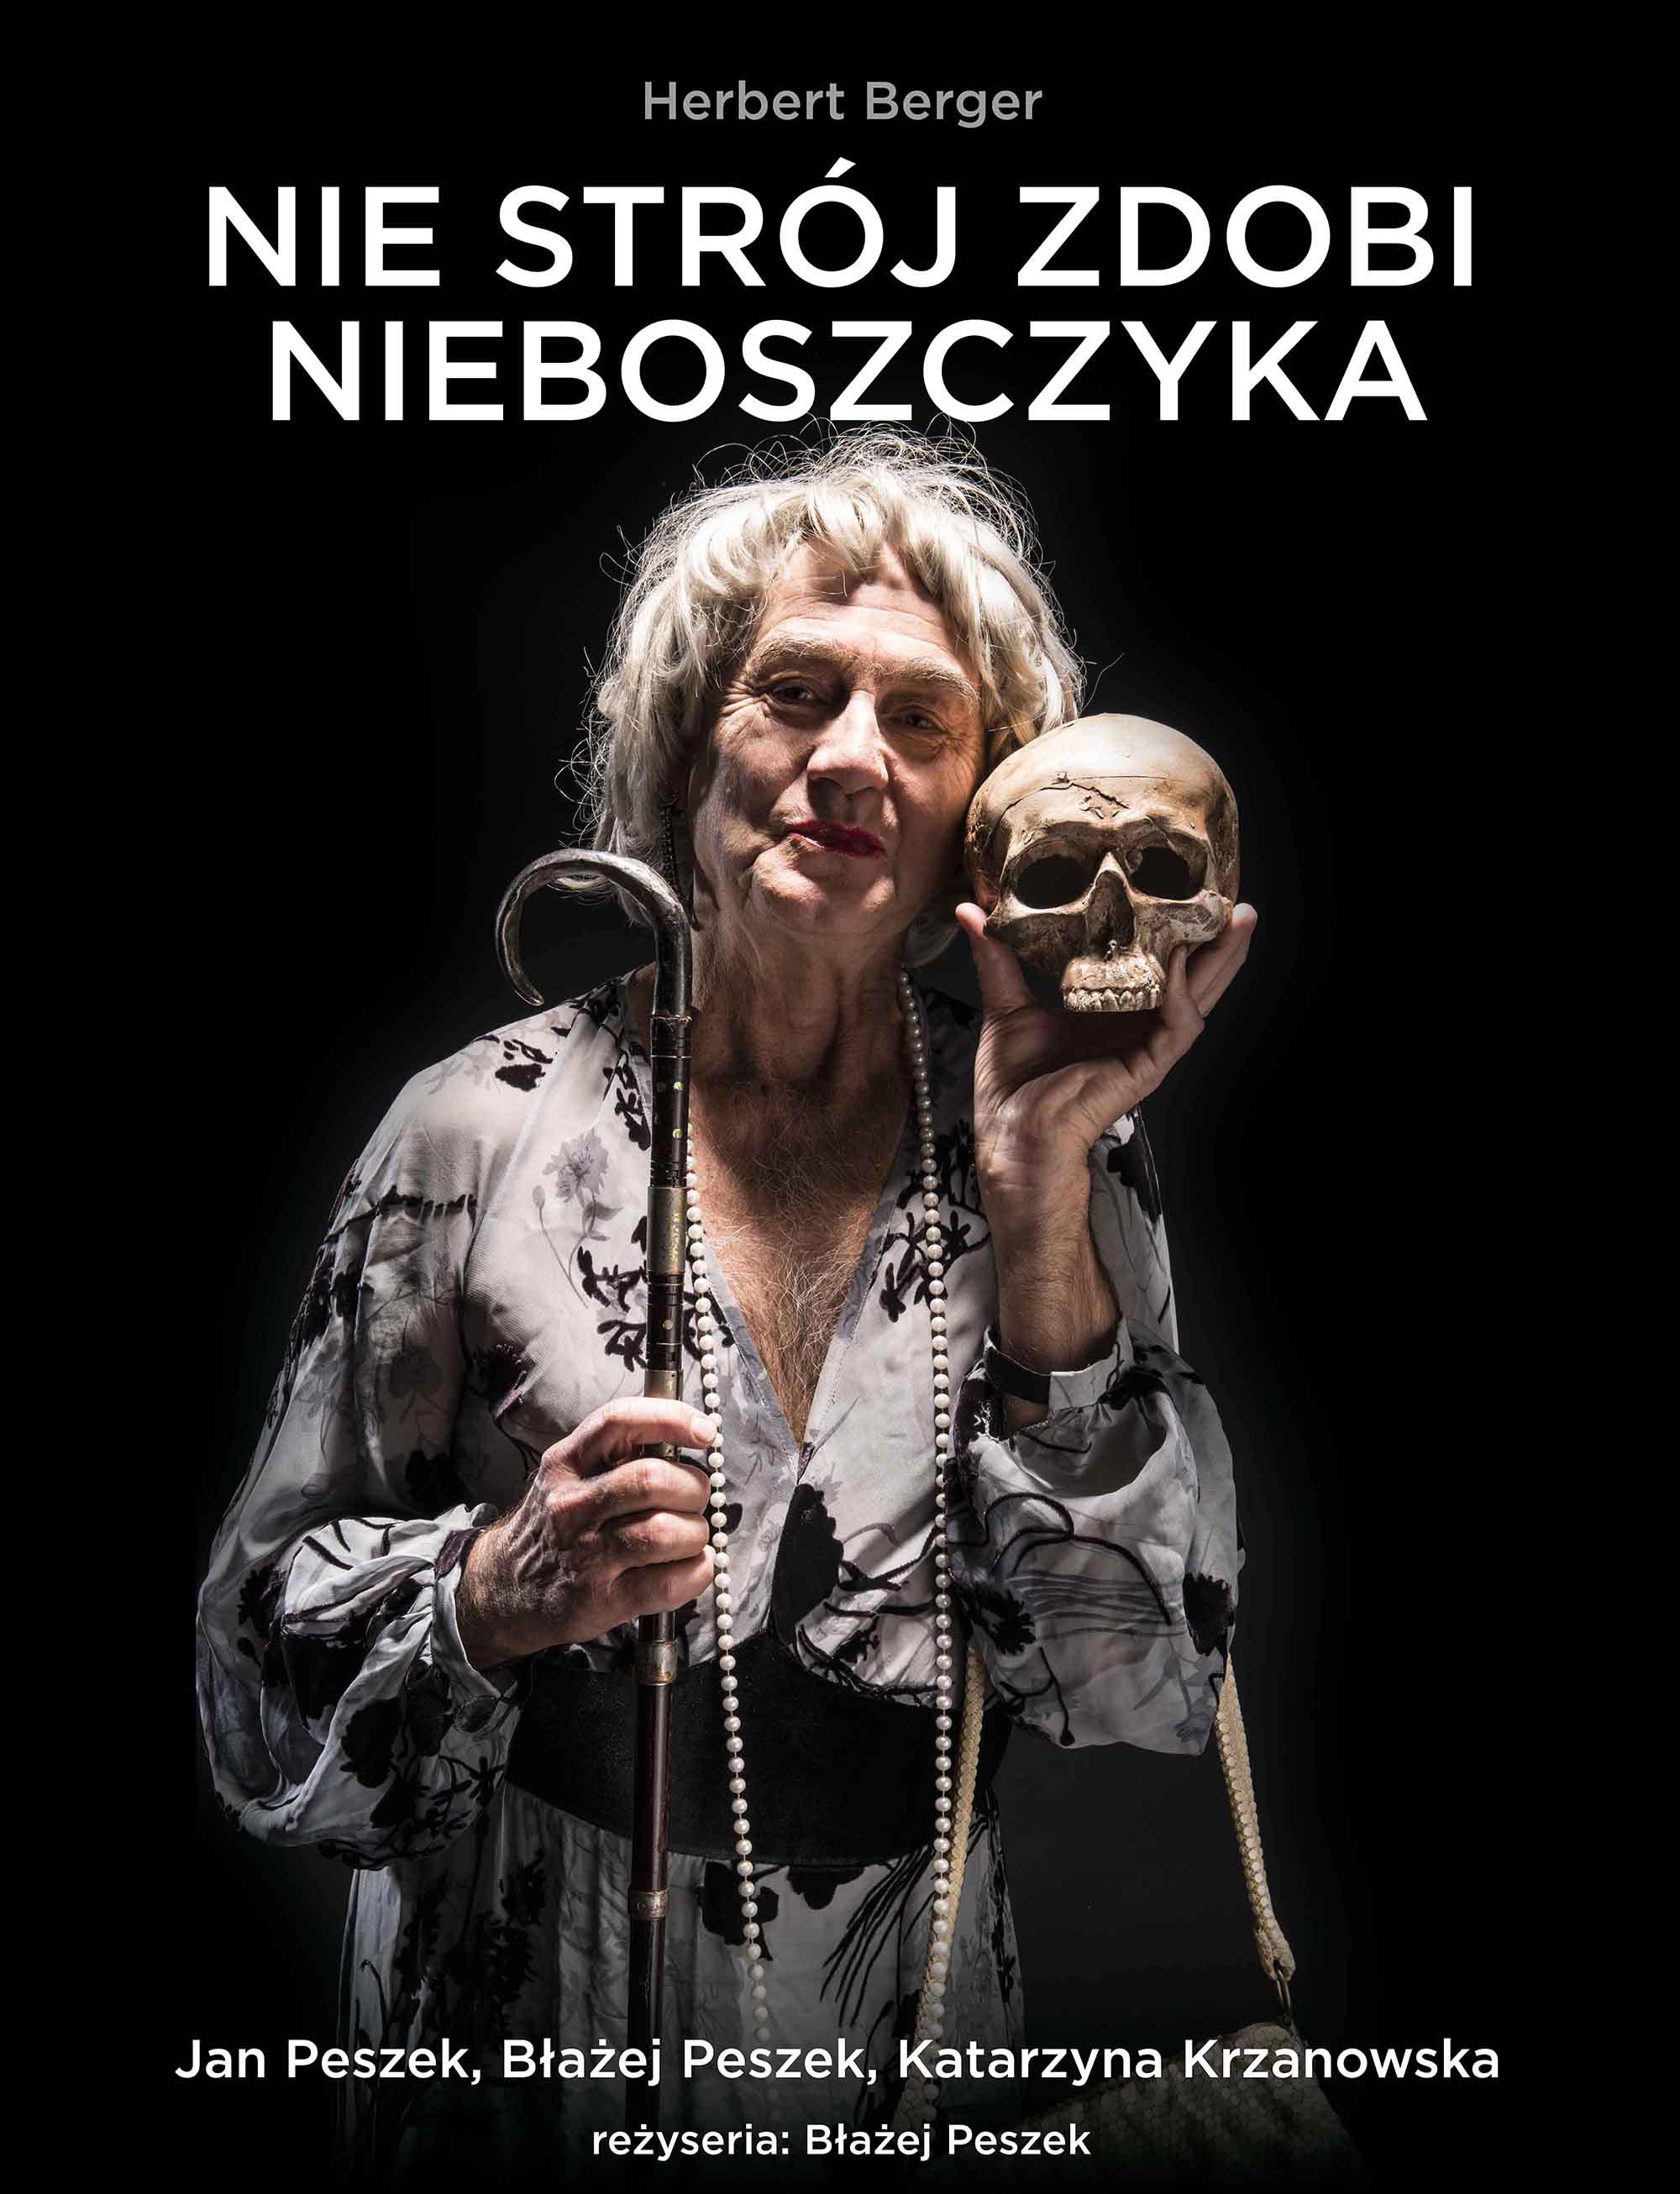 Nie stroj zdobi nieboszczyka Jan Peszek rez Blazej Peszek teatr - fot. Mirosław Mróz Studio22